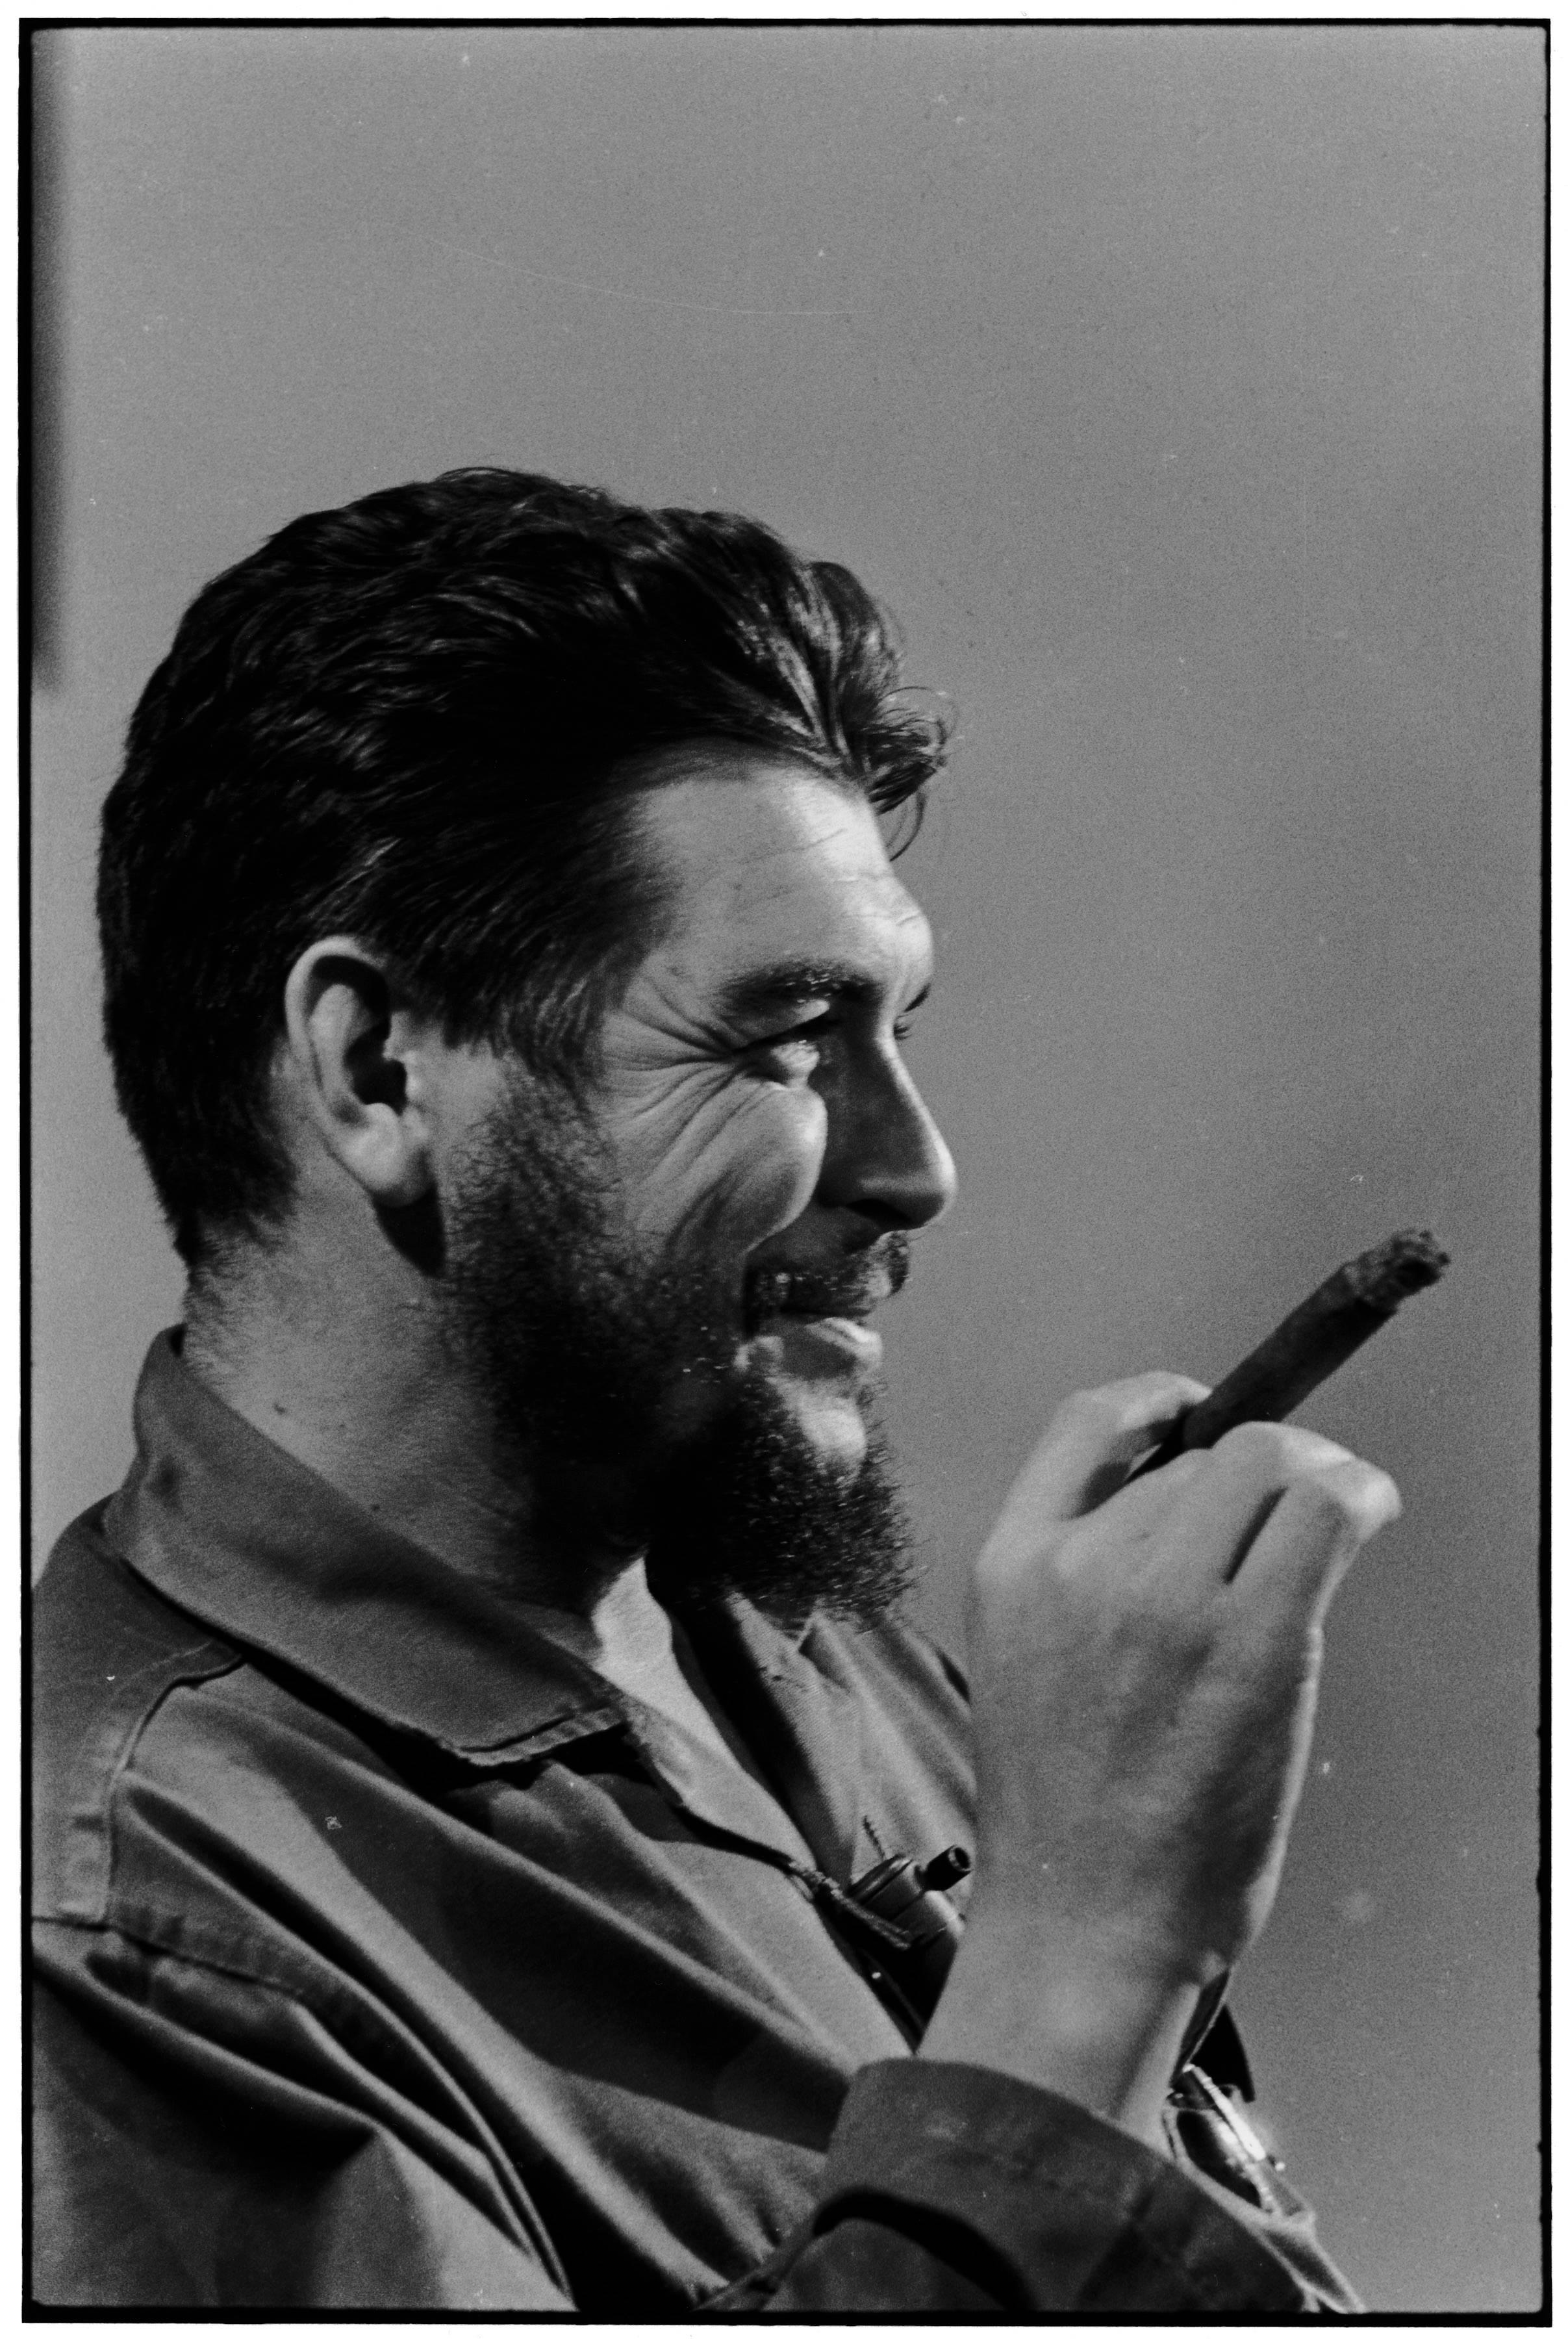 Che Guevara, Havanna, 1964  - Elliott Erwitt (Schwarz-Weiß-Fotografie)
Signiert, betitelt und datiert auf dem beiliegenden Etikett des Künstlers
Silbergelatineabzug, später gedruckt

Erhältlich in vier Größen:
11 x 14 Zoll
16 x 20 Zoll
20 x 24